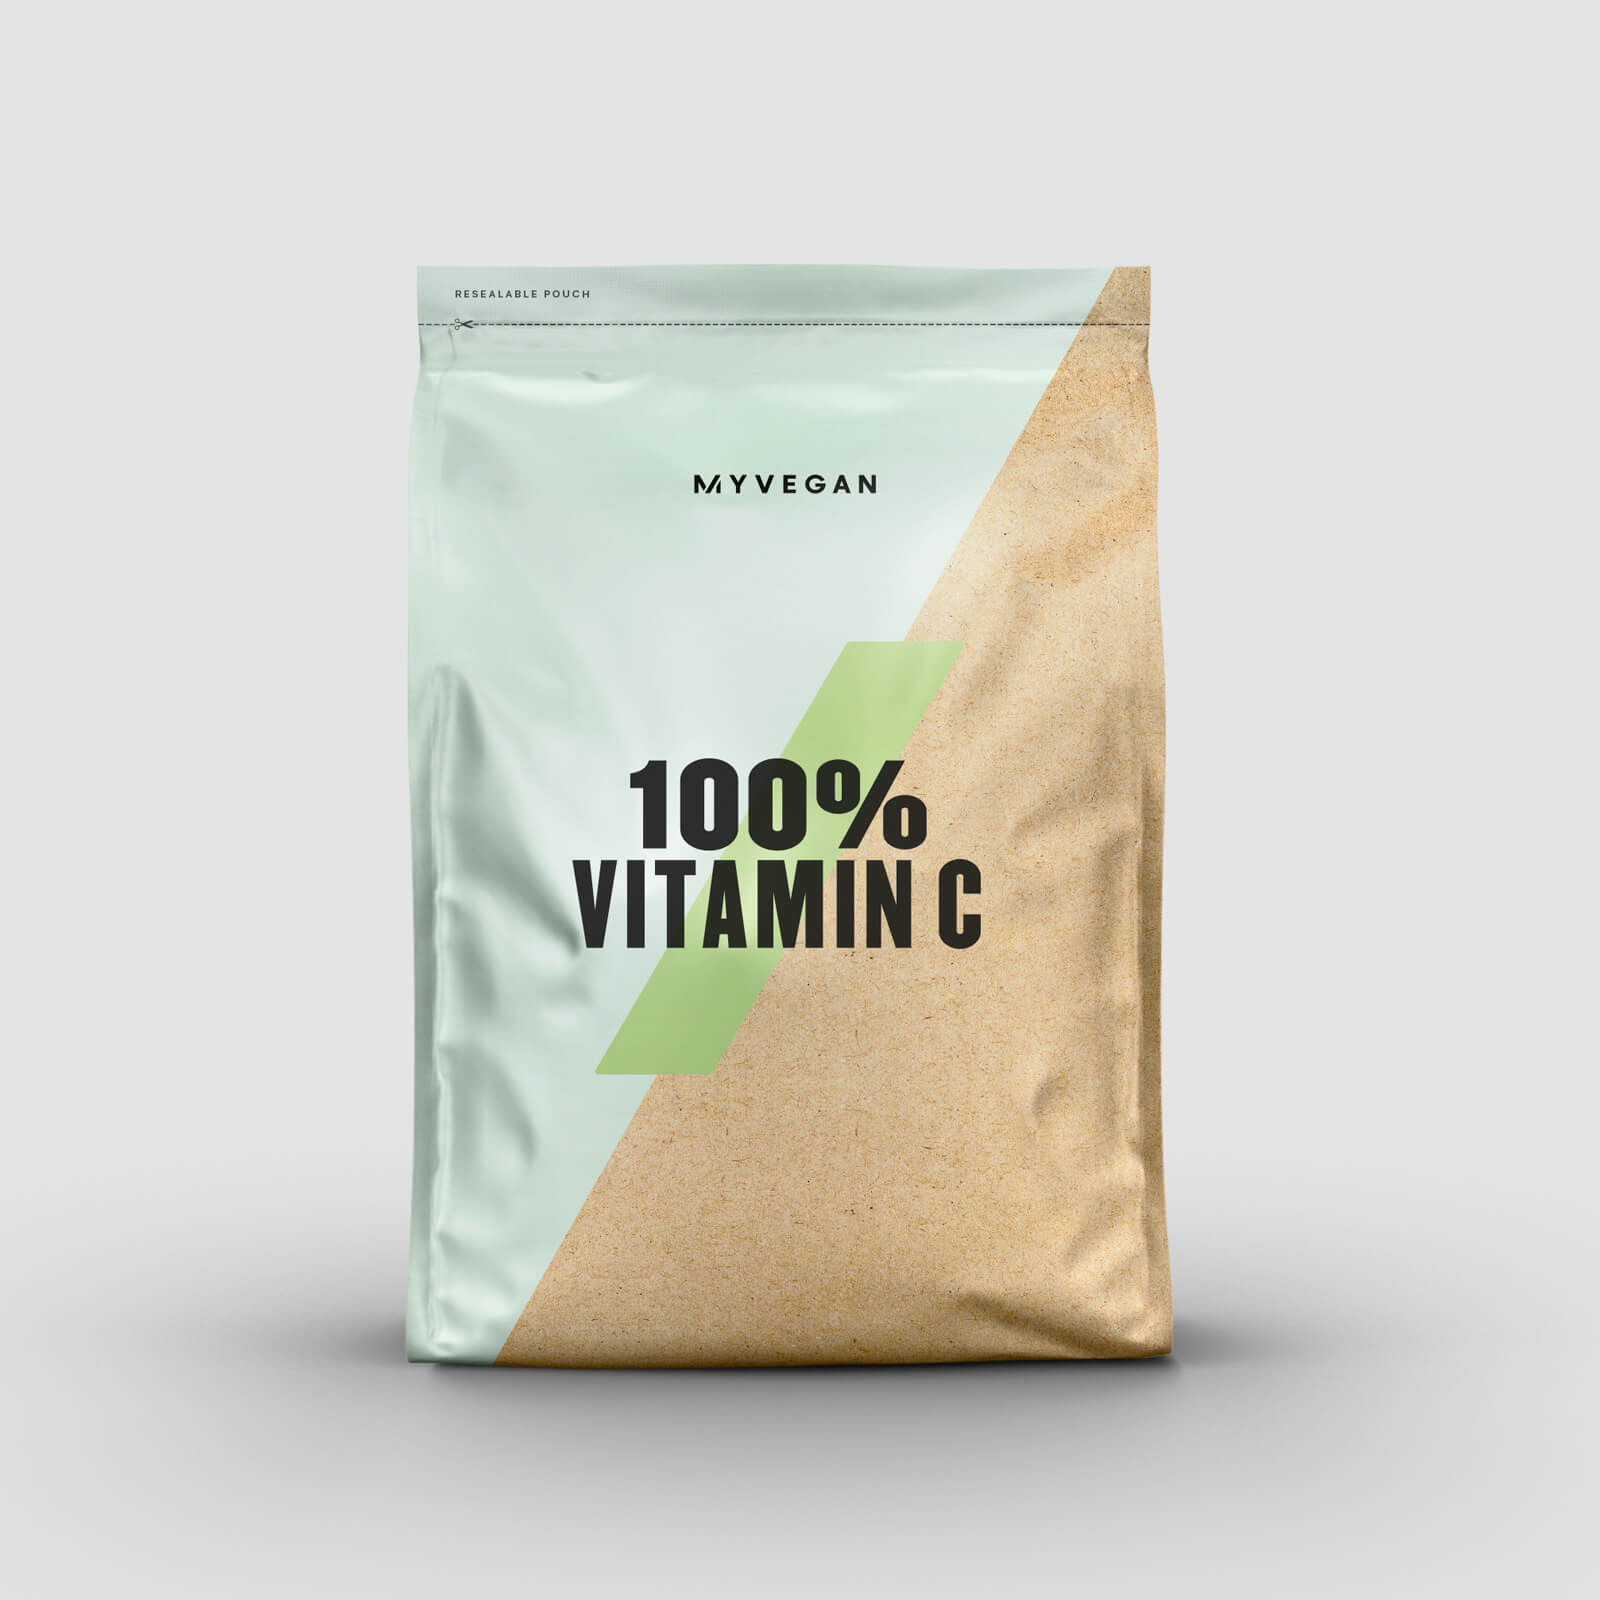 100% Vitamine - 100g | Supplementen-vergelijker.nl